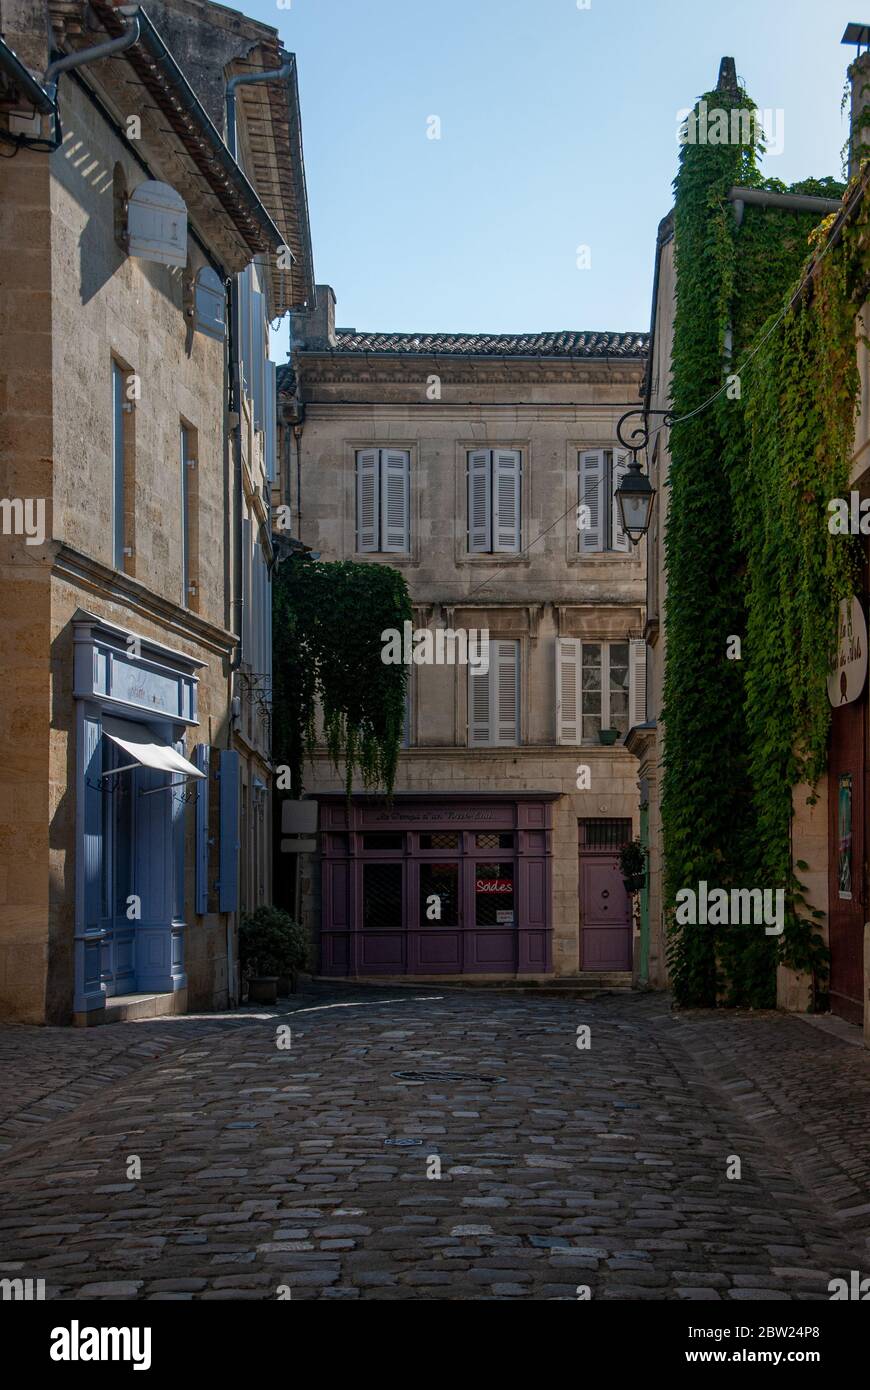 Rues en pierre dans le village de Saint-Emilion. France Banque D'Images